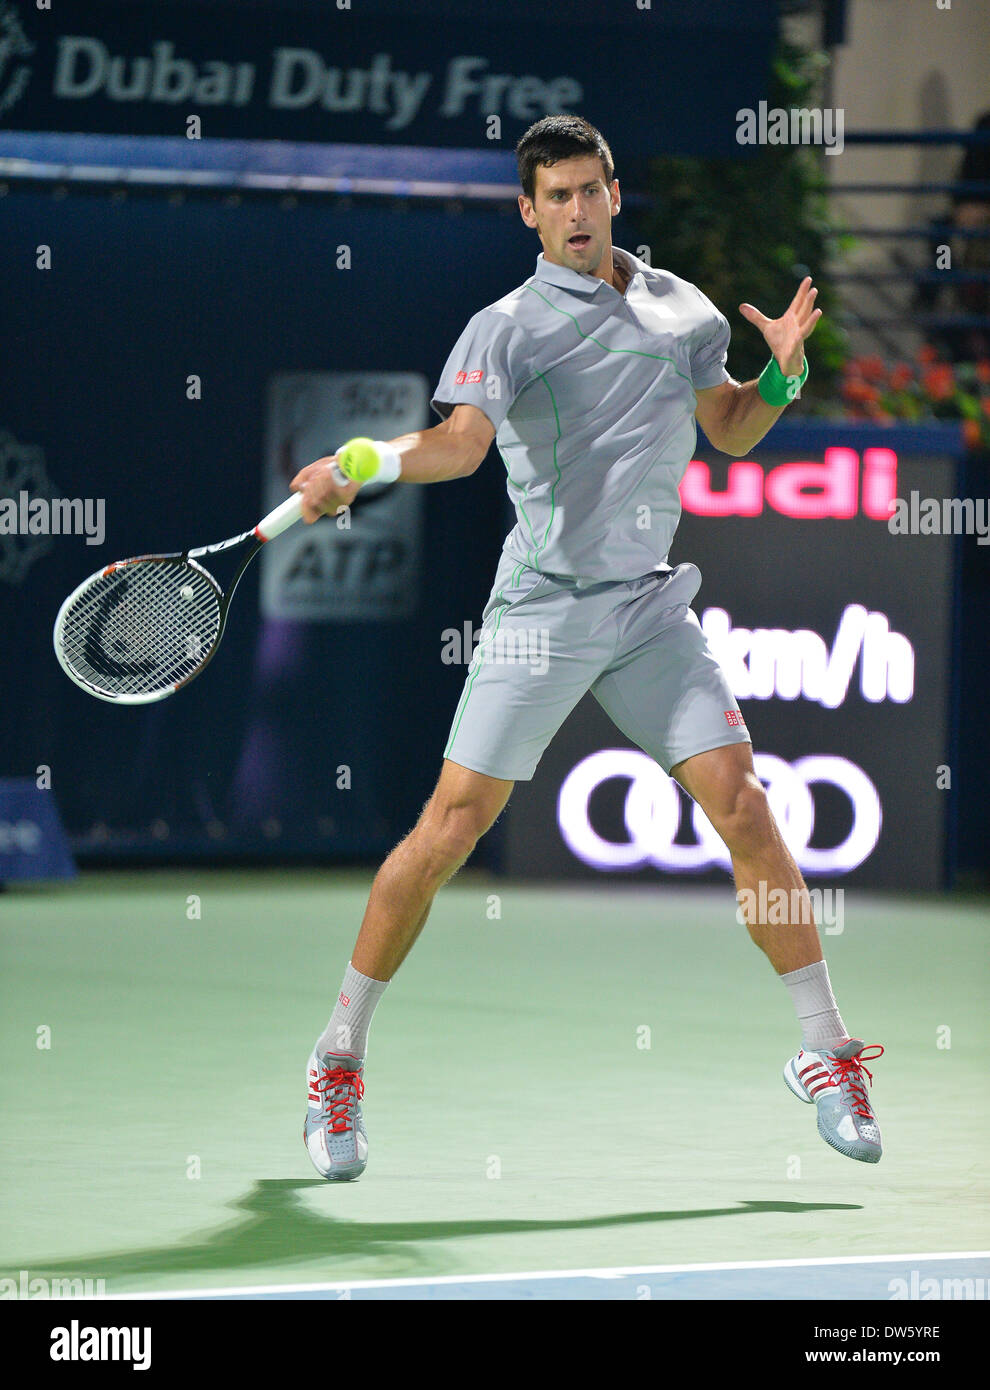 DUBAI, Vereinigte Arabische Emirate, 27. Februar 2014. Novak Djokovic  spielt eine Vorhand gegen Roger Federer im Viertelfinale der Dubai Duty  Free Tennis Championships. Federer gewann 3-6, 6-3 6-2 bis ins Finale des